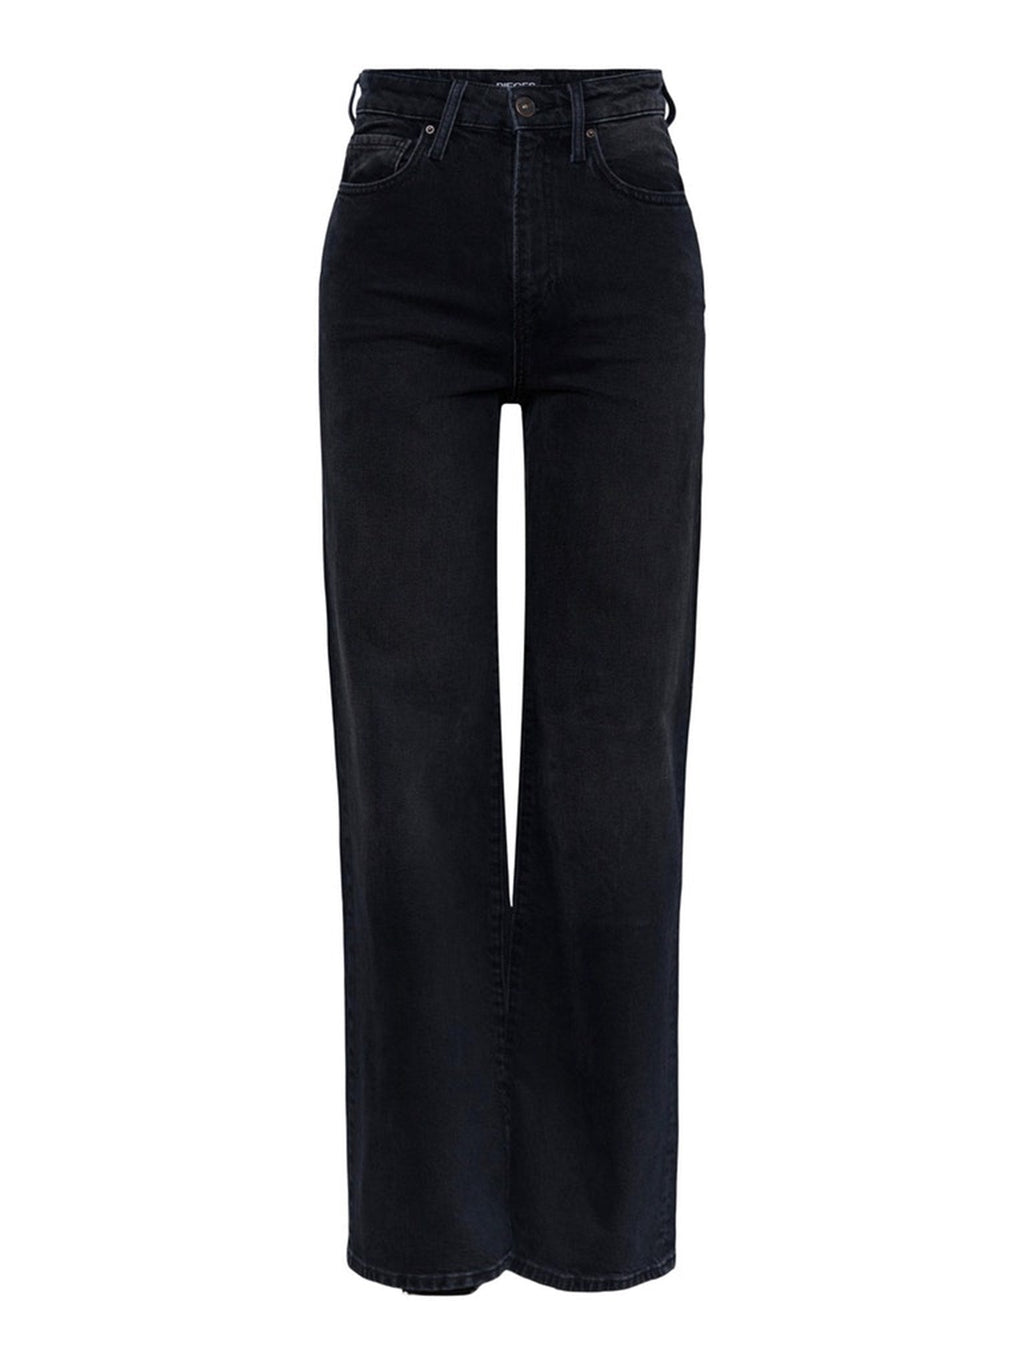 Jeans con cintura alta Flikka - mezclilla negra